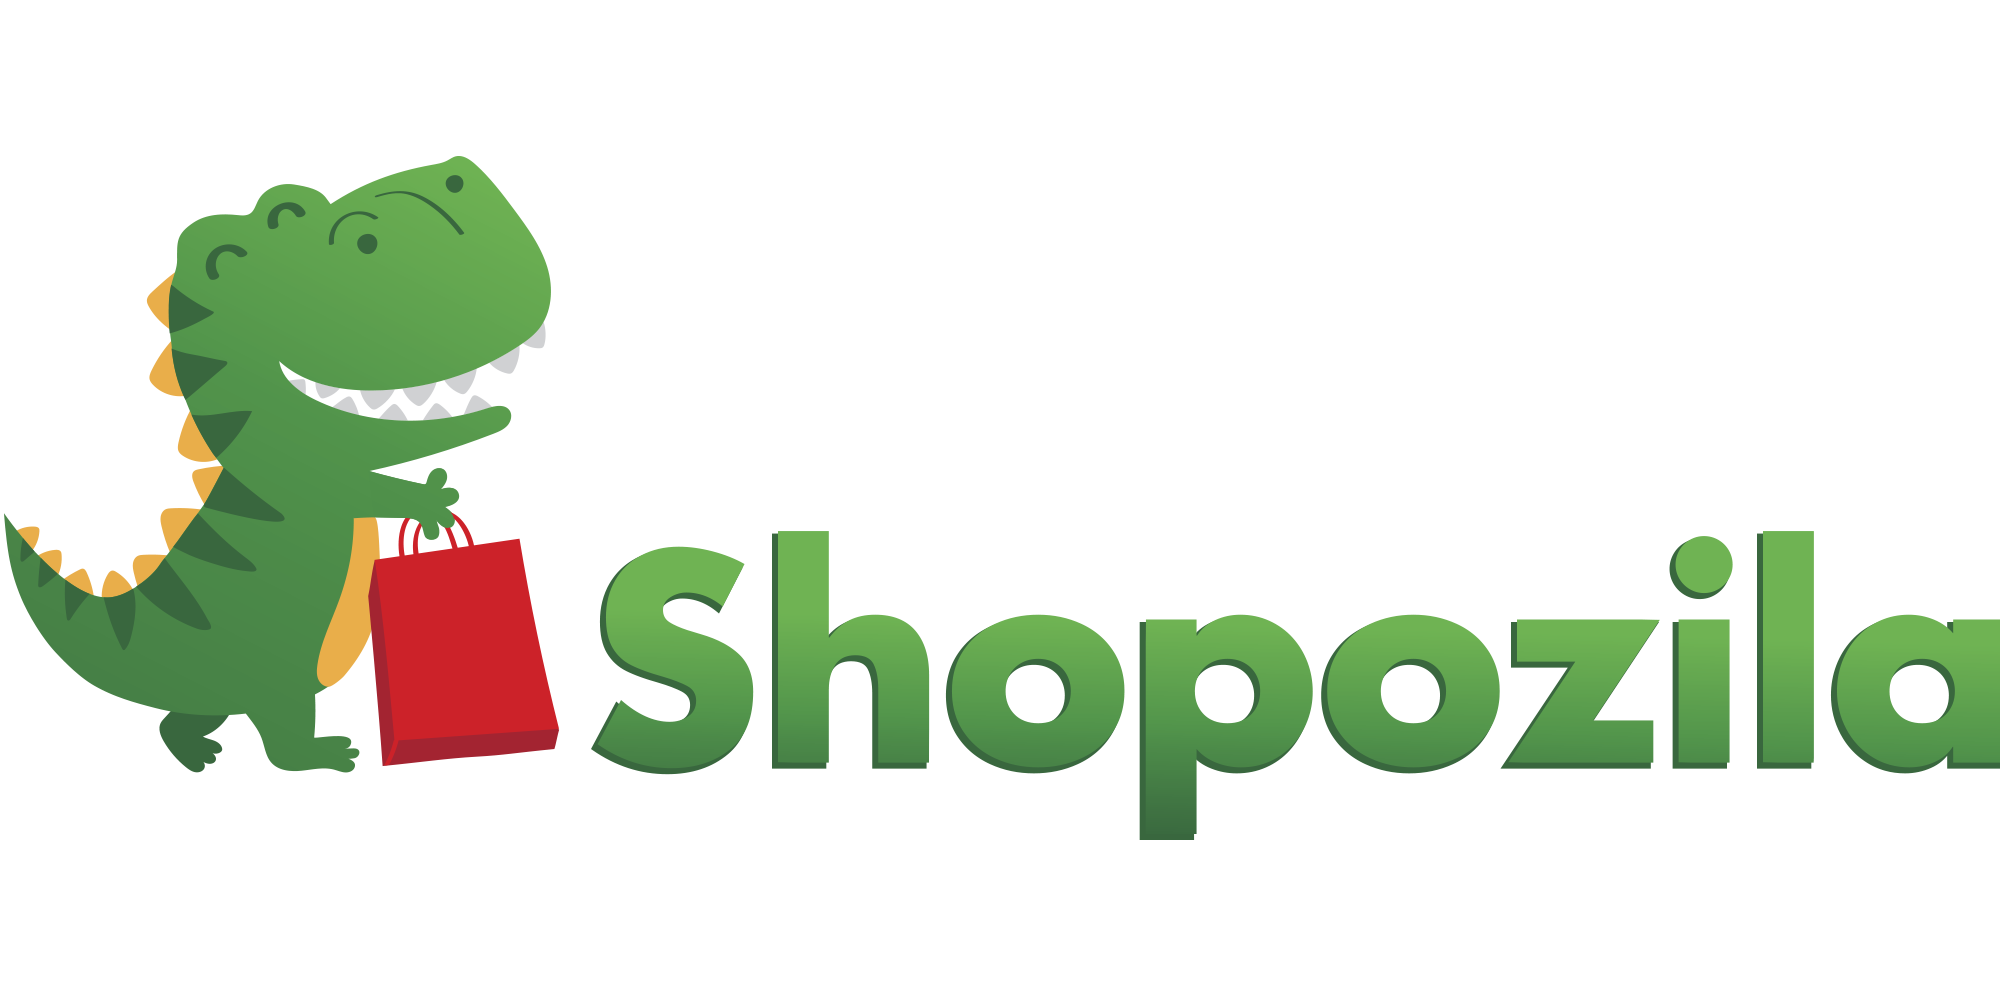 Інтернет магазин салонного обладнання Shopozila.com